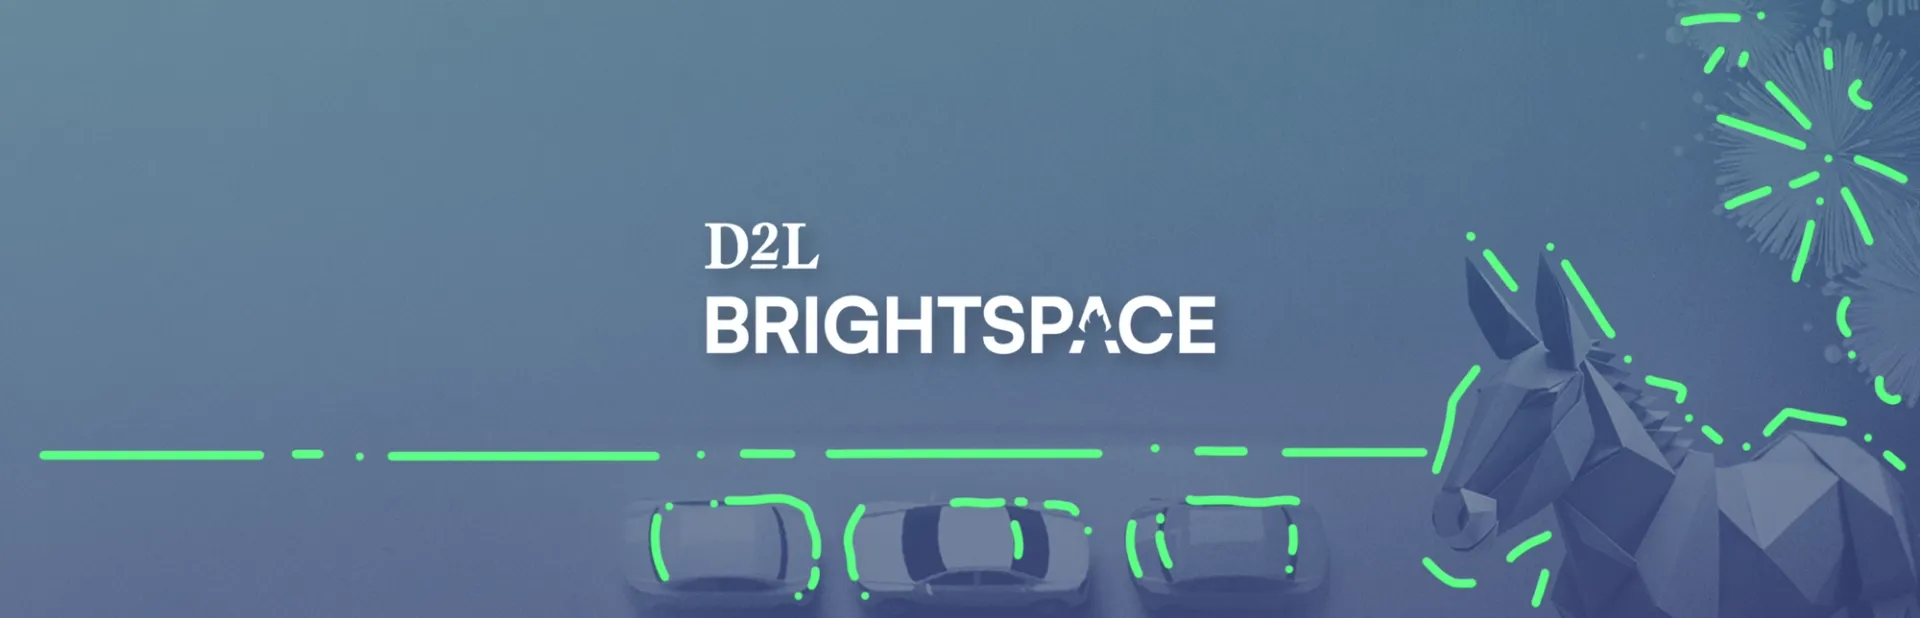 D2L Brightspace’s brilliant ad campaign